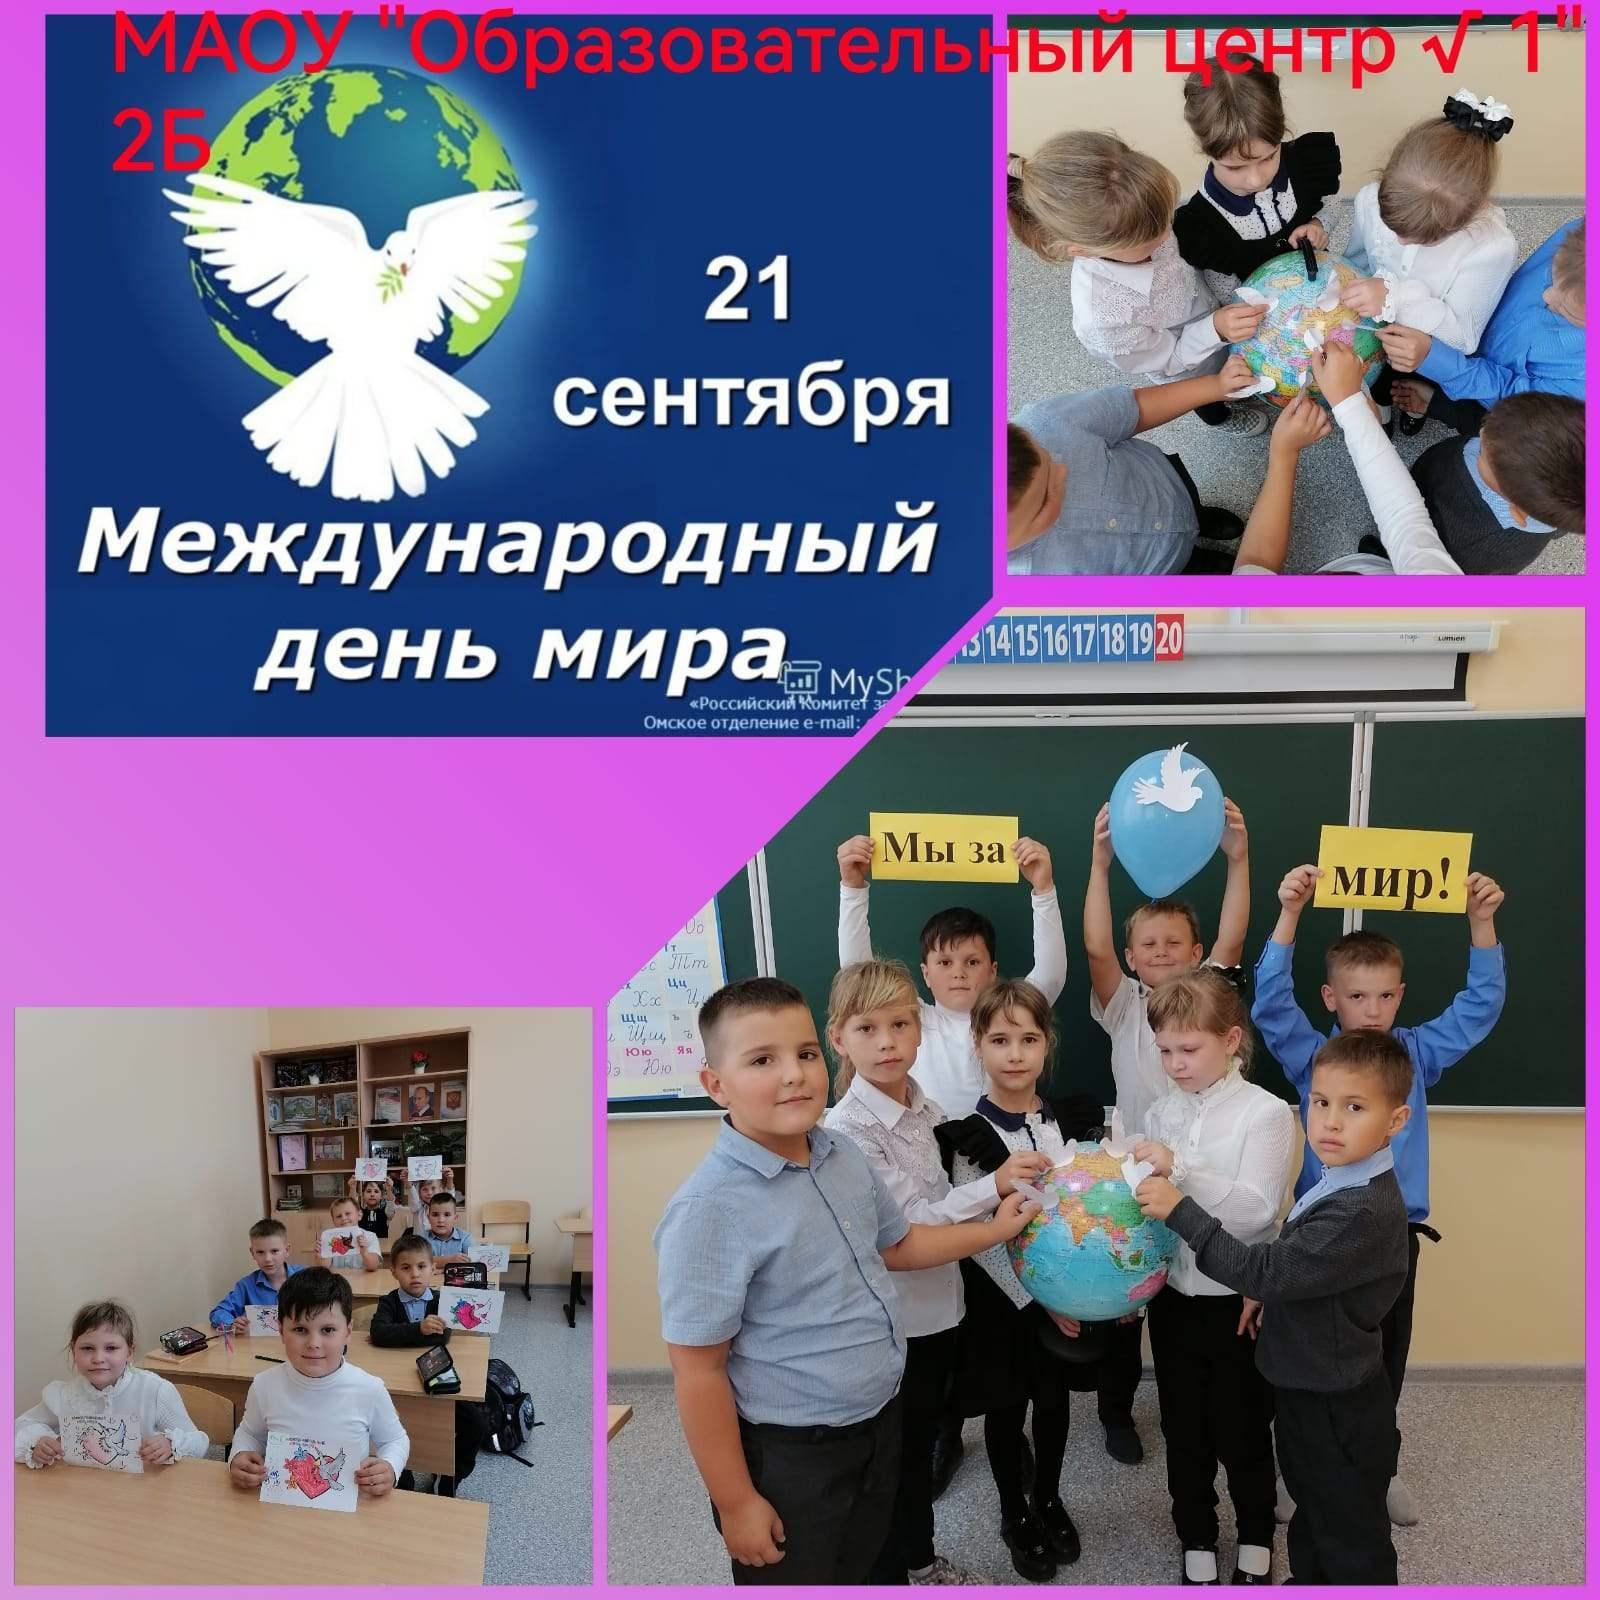 Международный день мира отметили в МАОУ «Образовательный центр №1»..